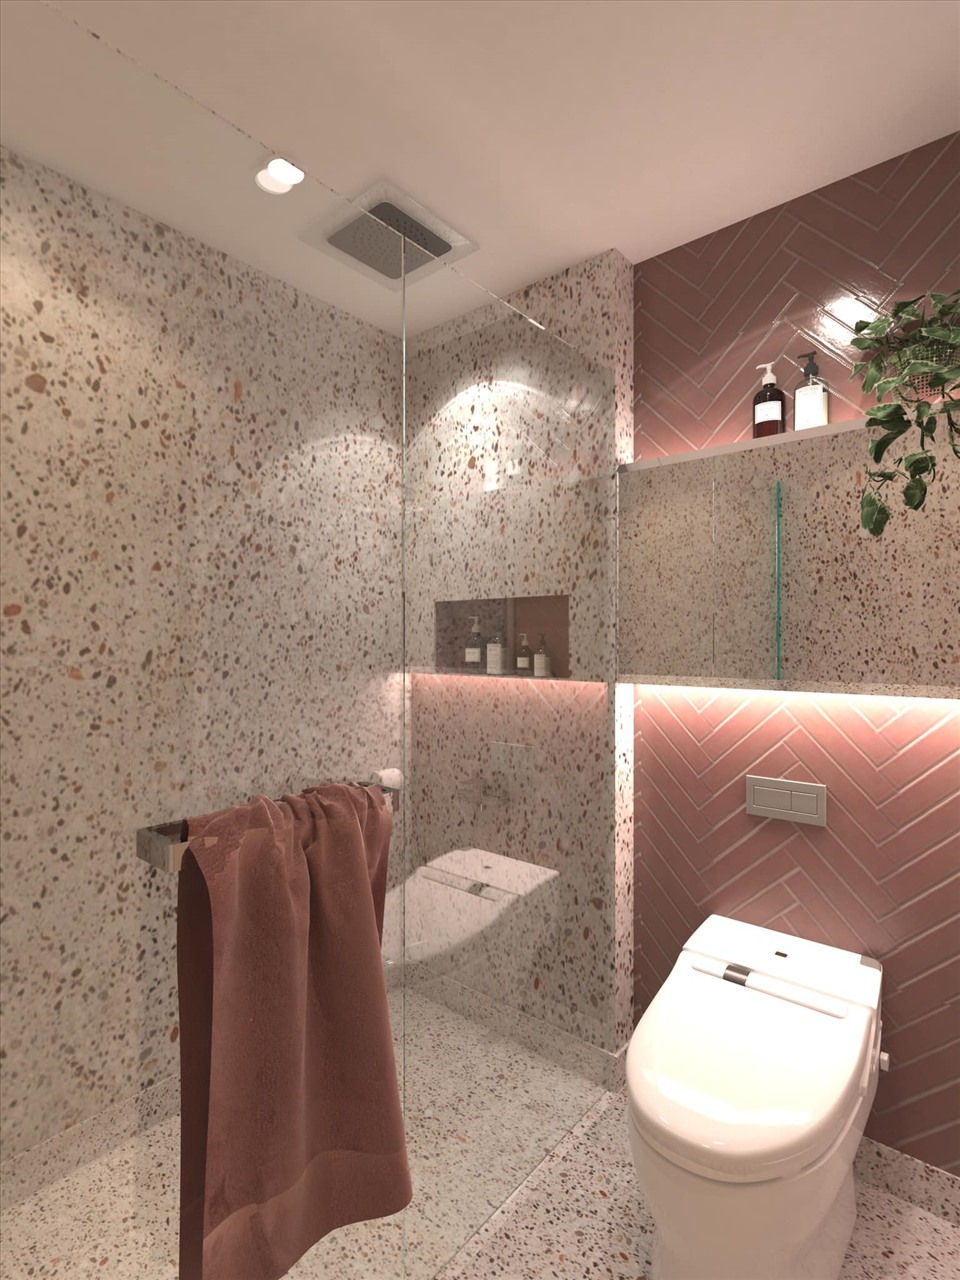 Phòng tắm và vệ sinh với tone hồng vô cùng dễ chịu và sang trọng. Nguồn: Lý Phương Châu